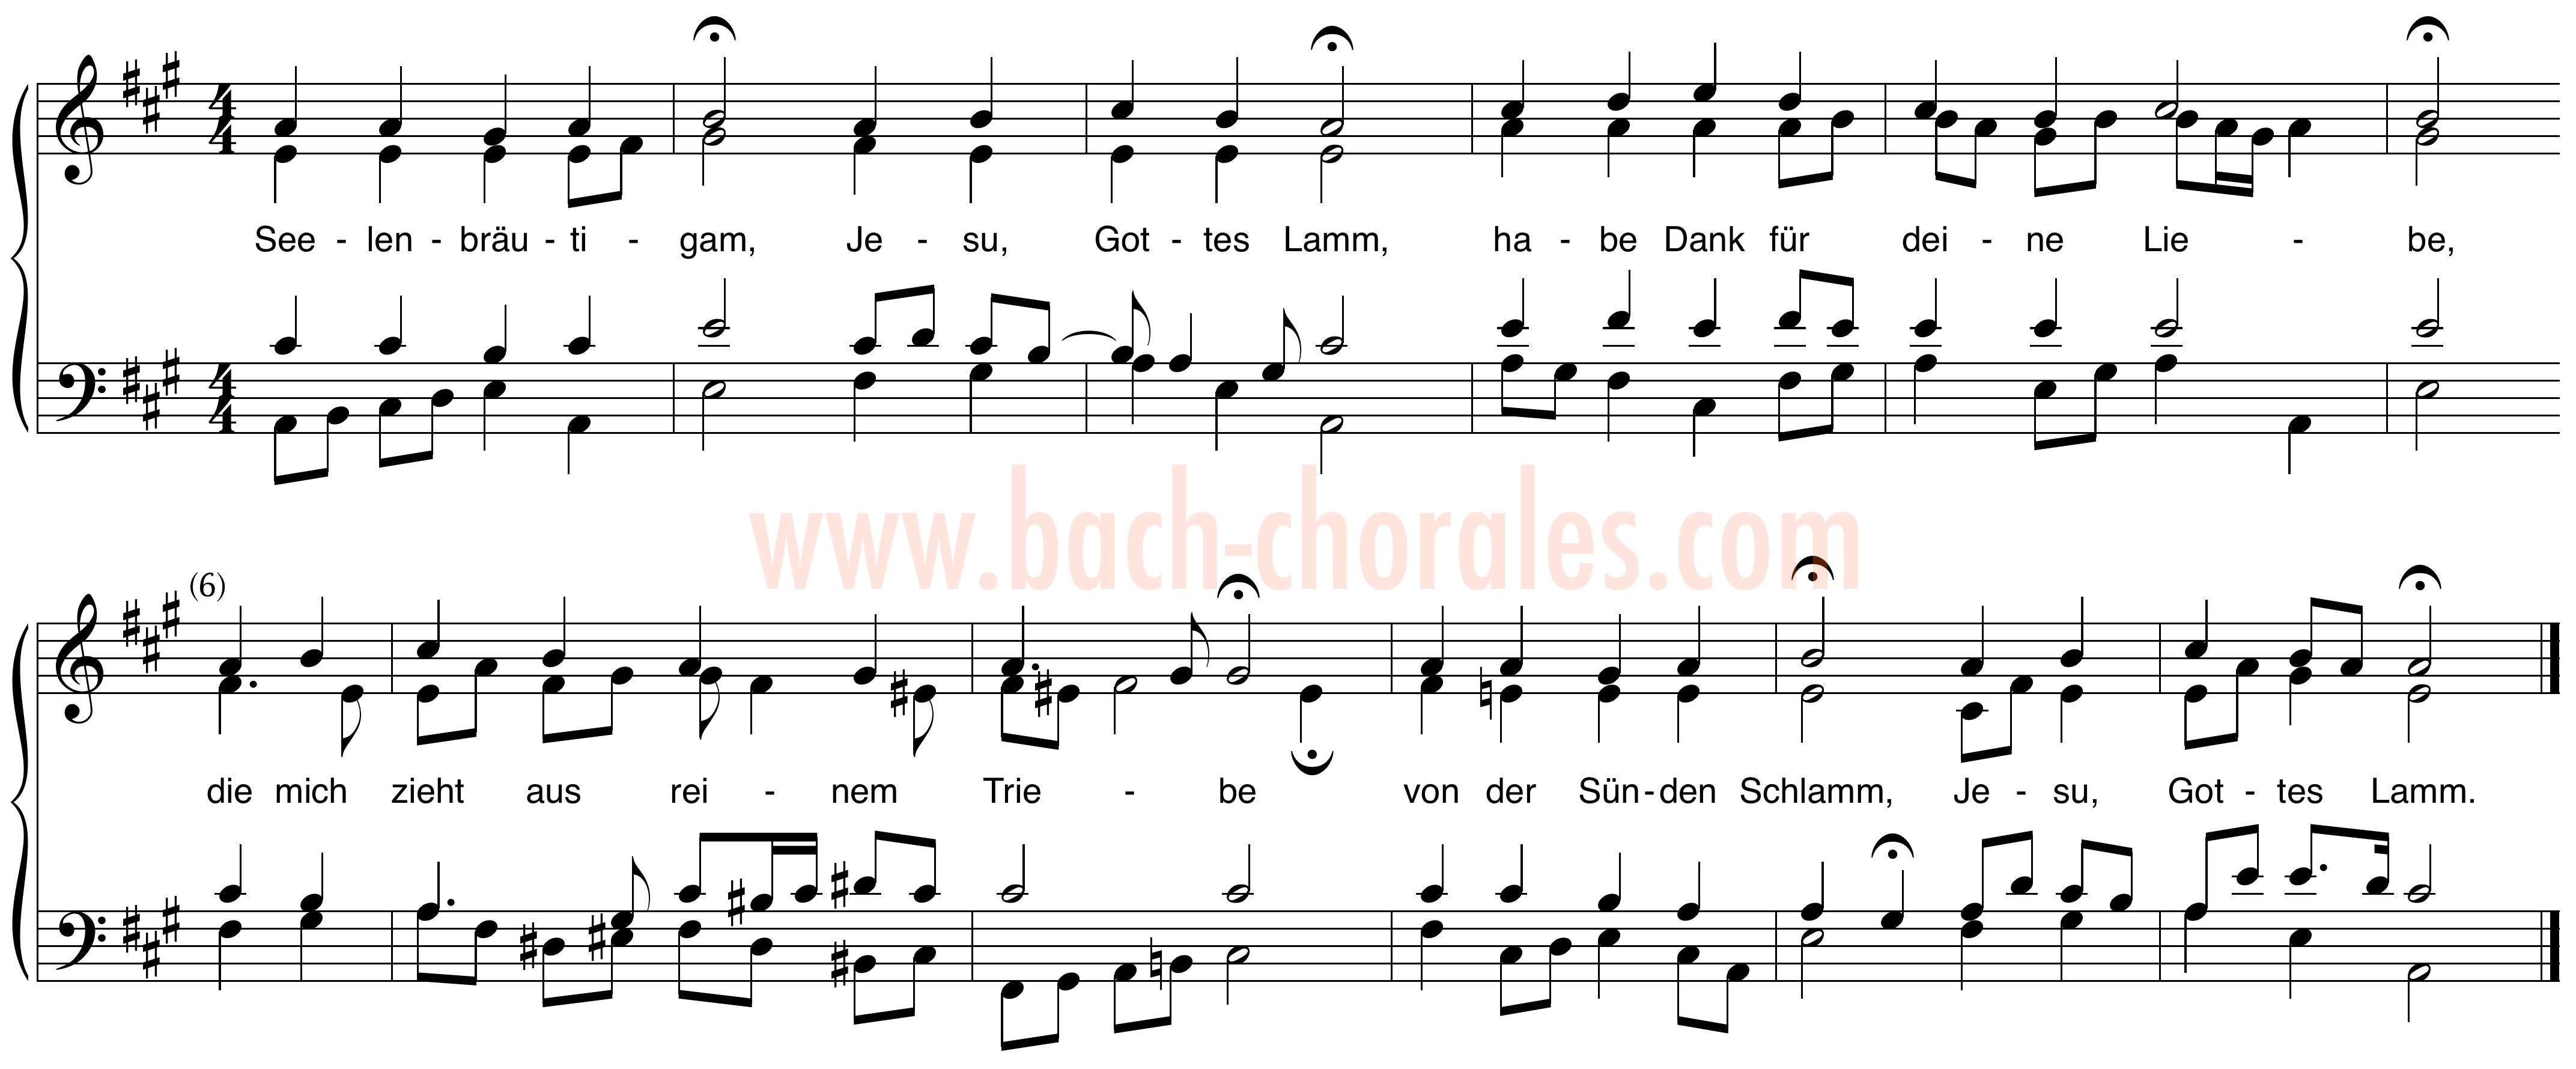 notenbeeld BWV 409 op https://www.bach-chorales.com/